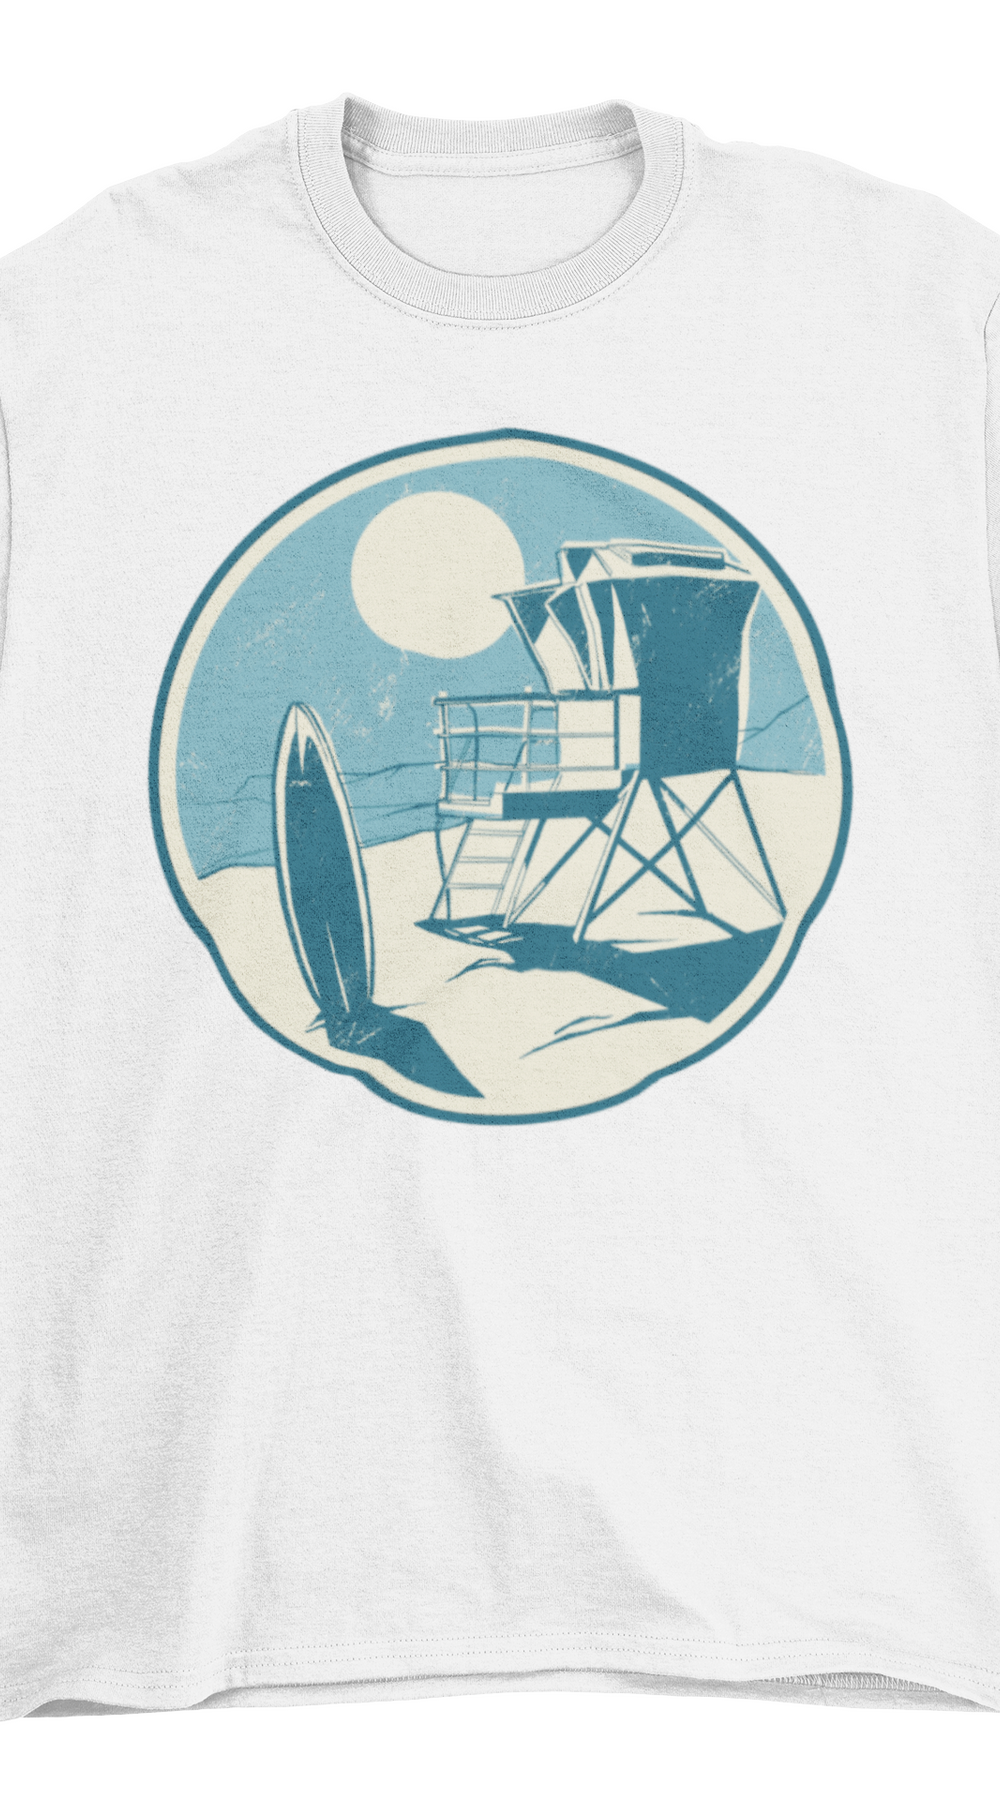 California Beach T-shirt